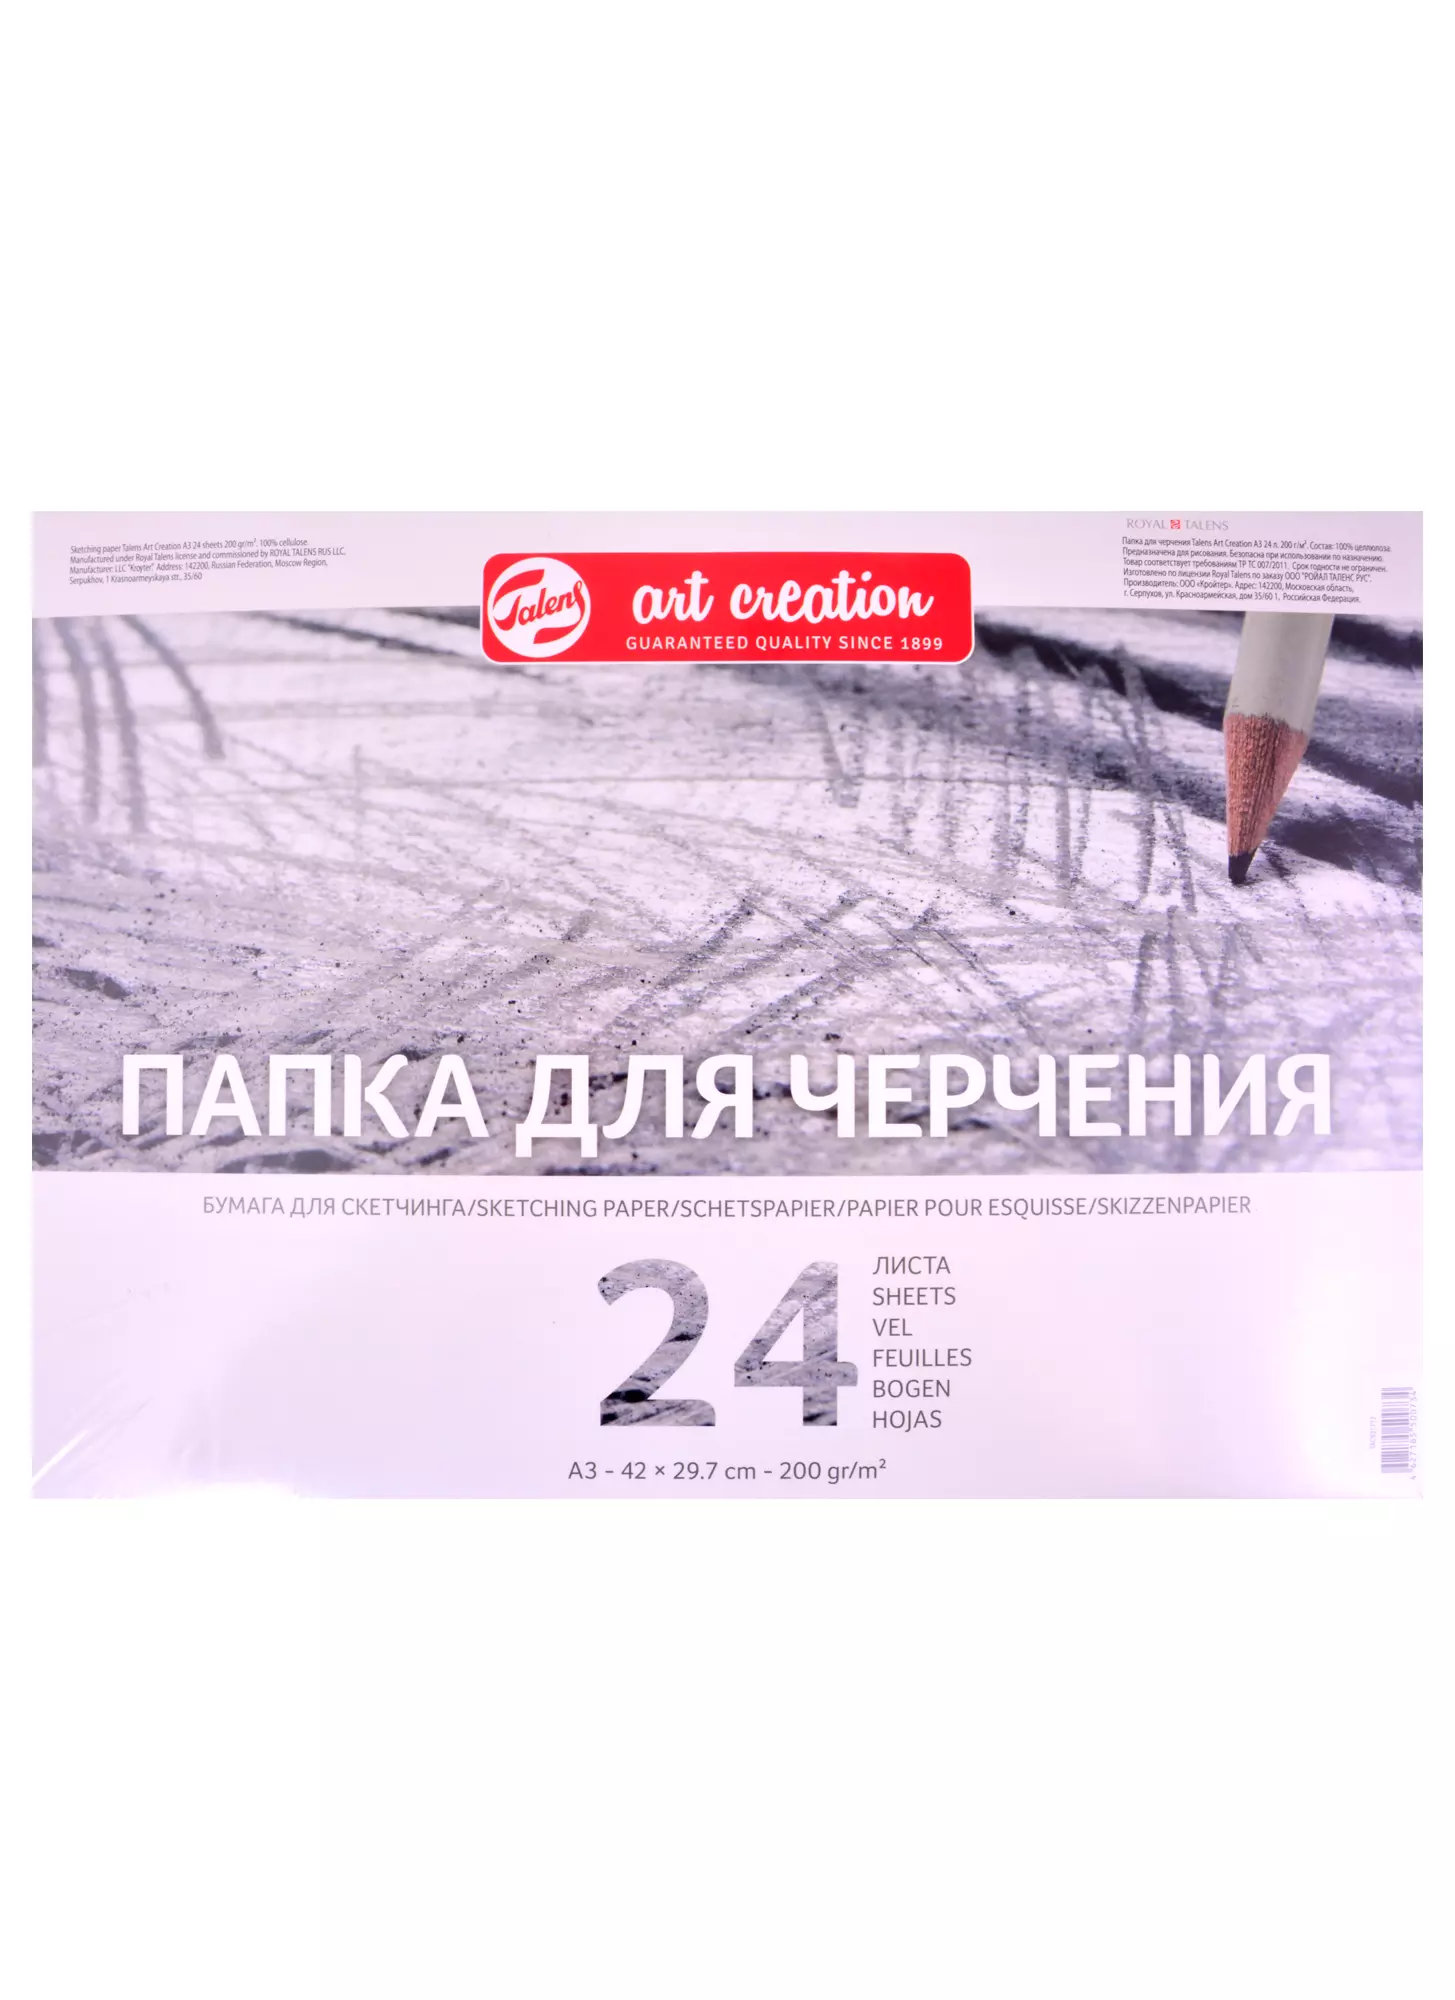 Бумага для графики и эскизов в наличии - купить в Москве, цена в интернет-магазине Красный карандаш